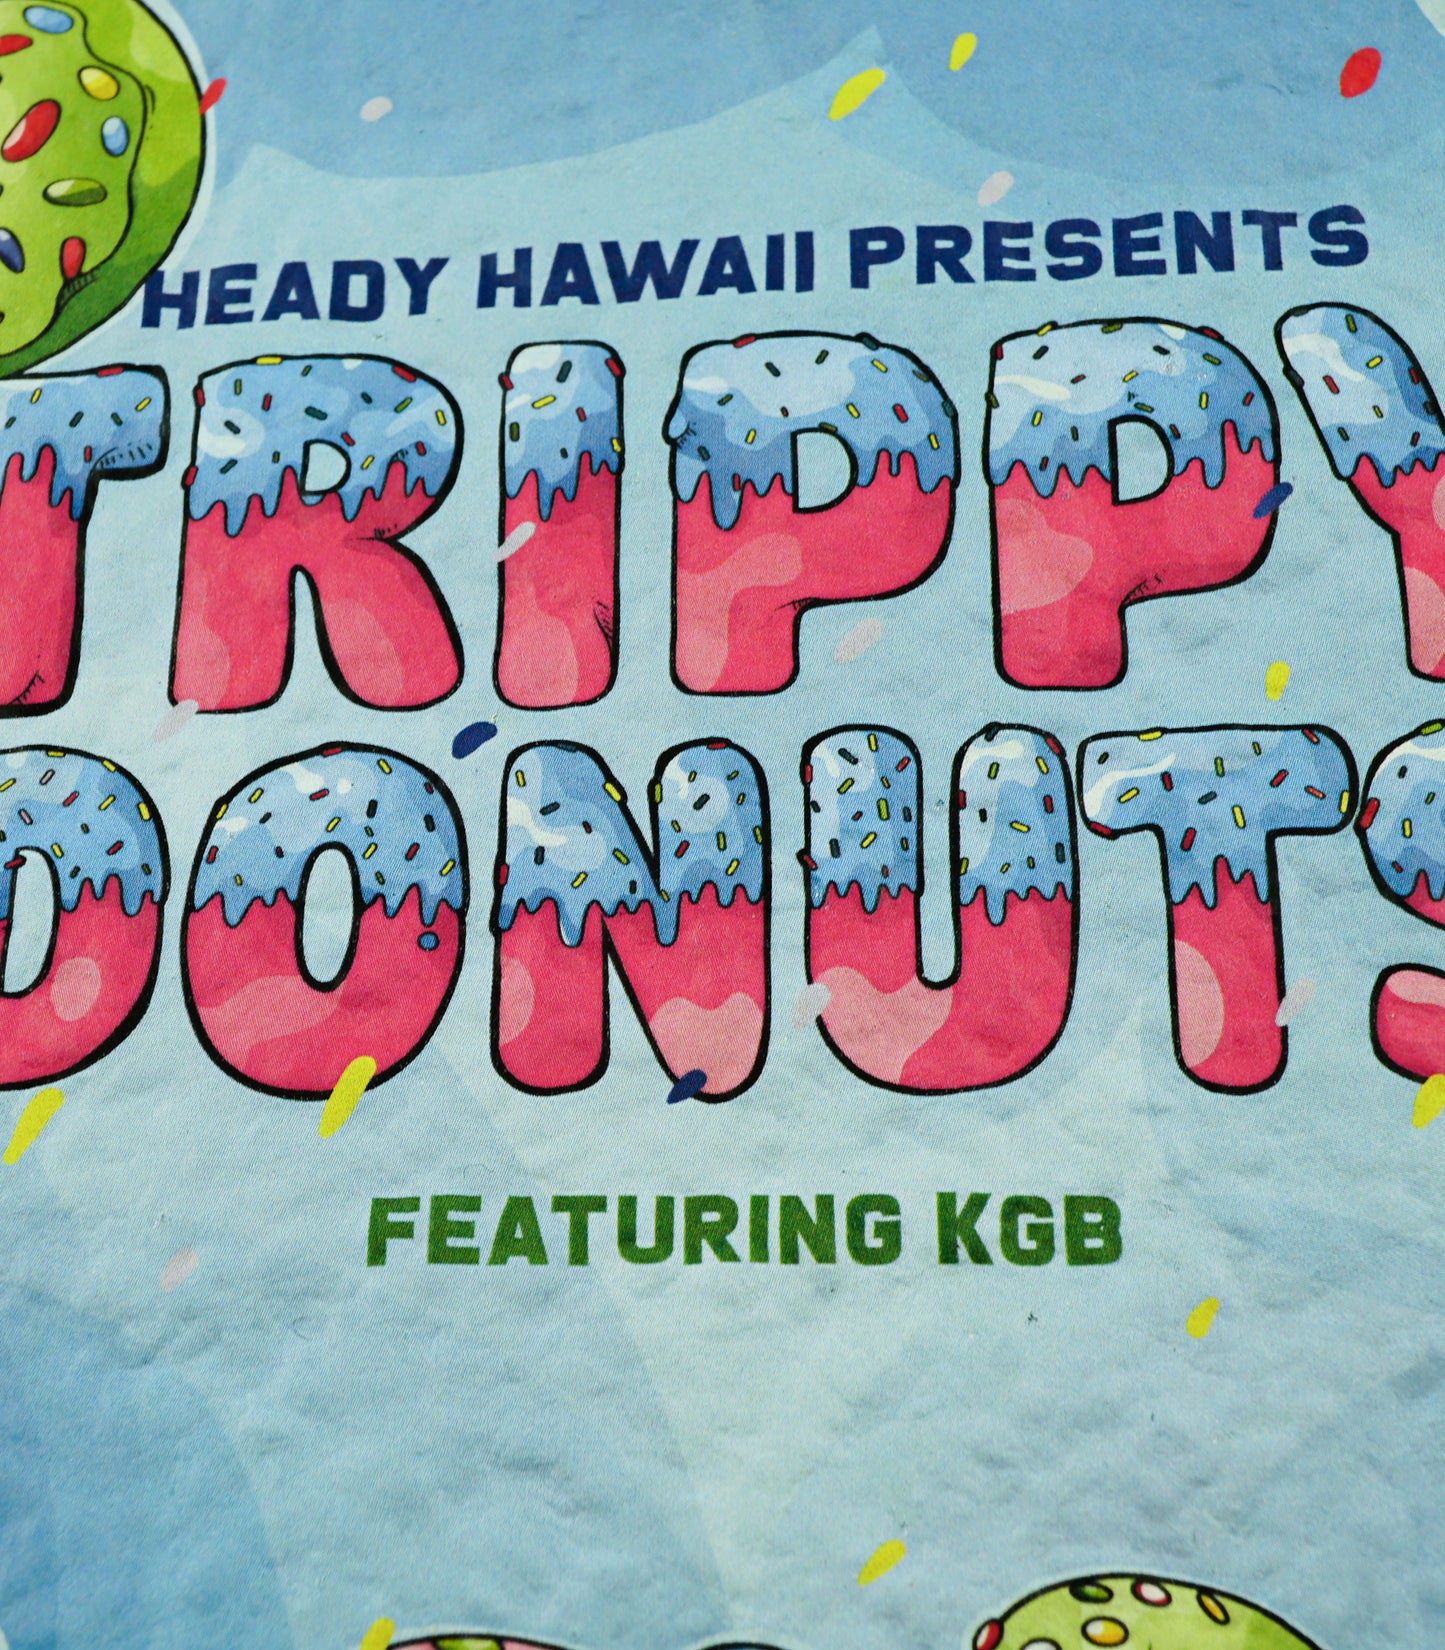 Trippy Donuts Moodmat